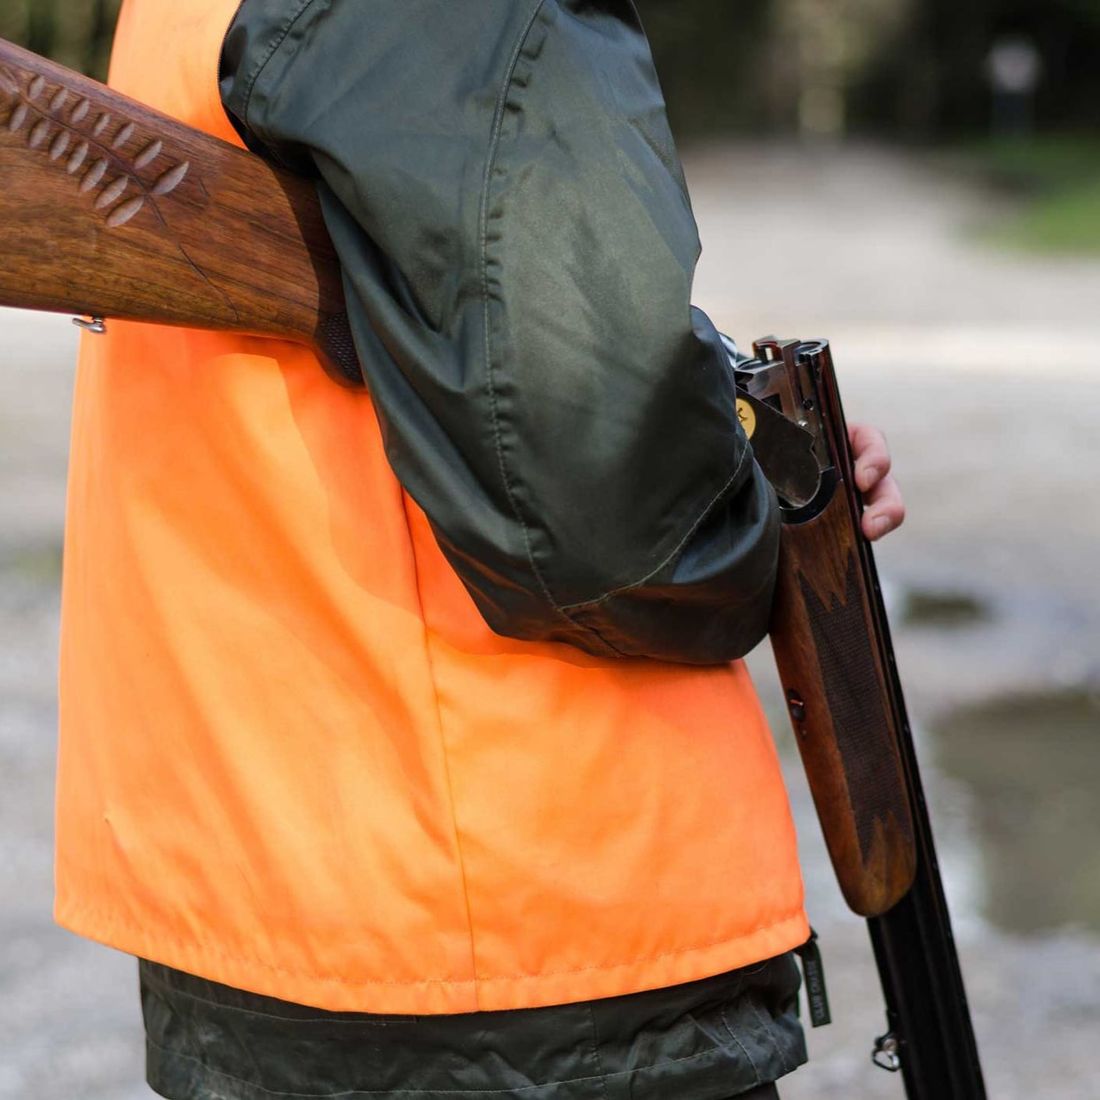 La chasse interdite dans plusieurs communes de l'Oise à cause d'un...